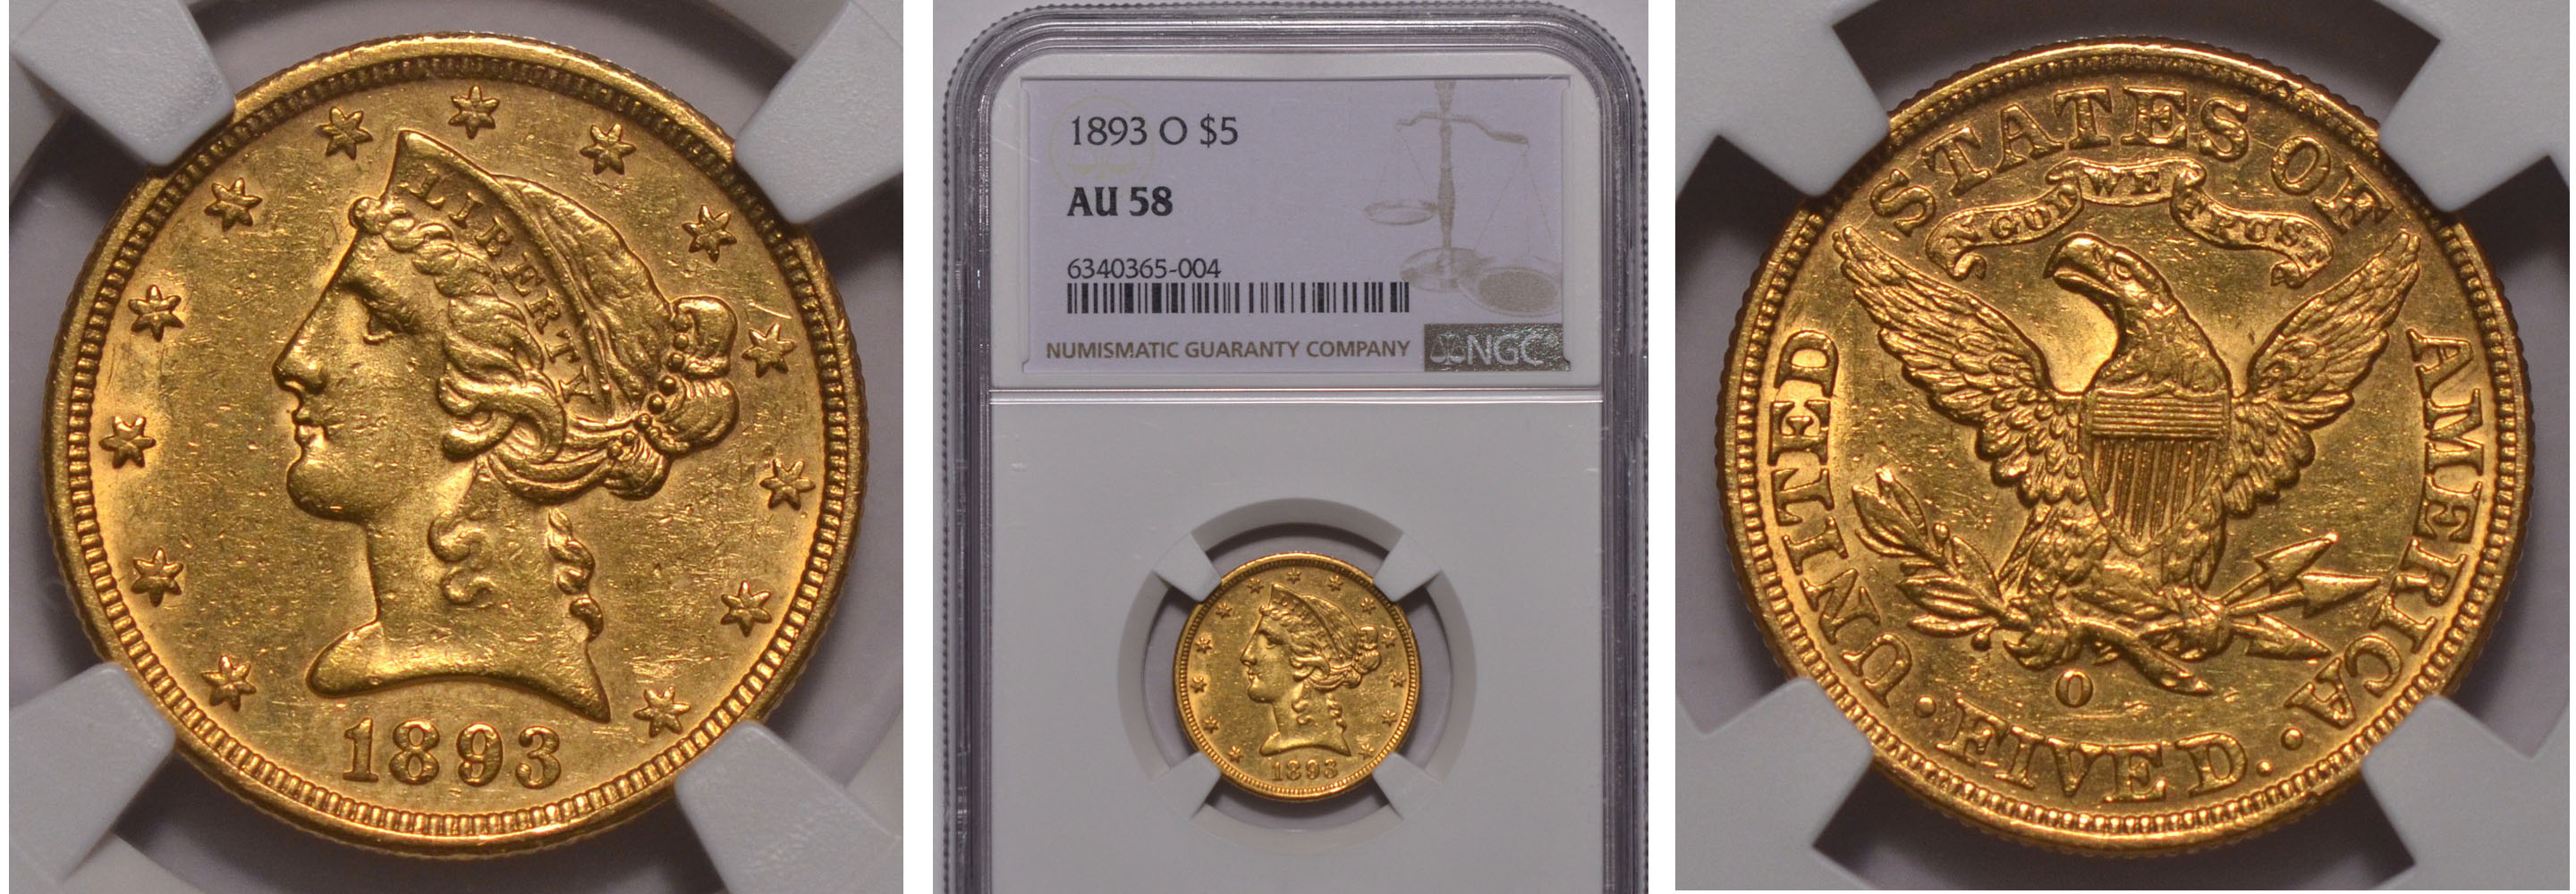 1893-O Gold Half Eagle $5 NGC AU58